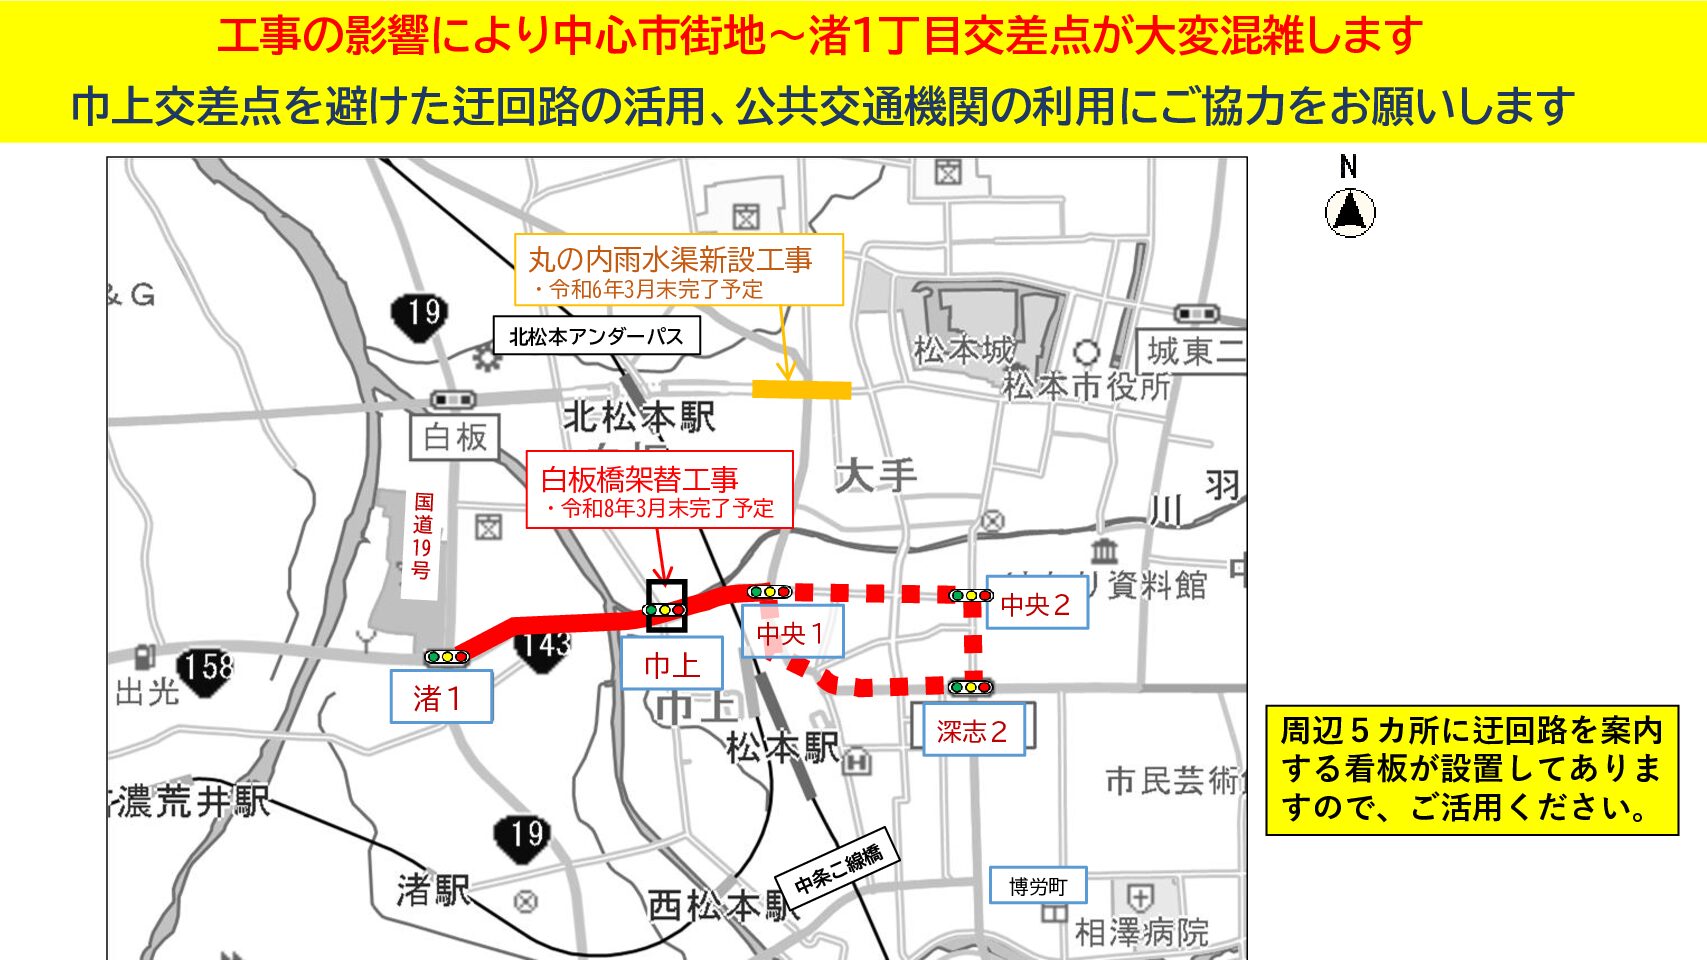 松本市街地渋滞情報